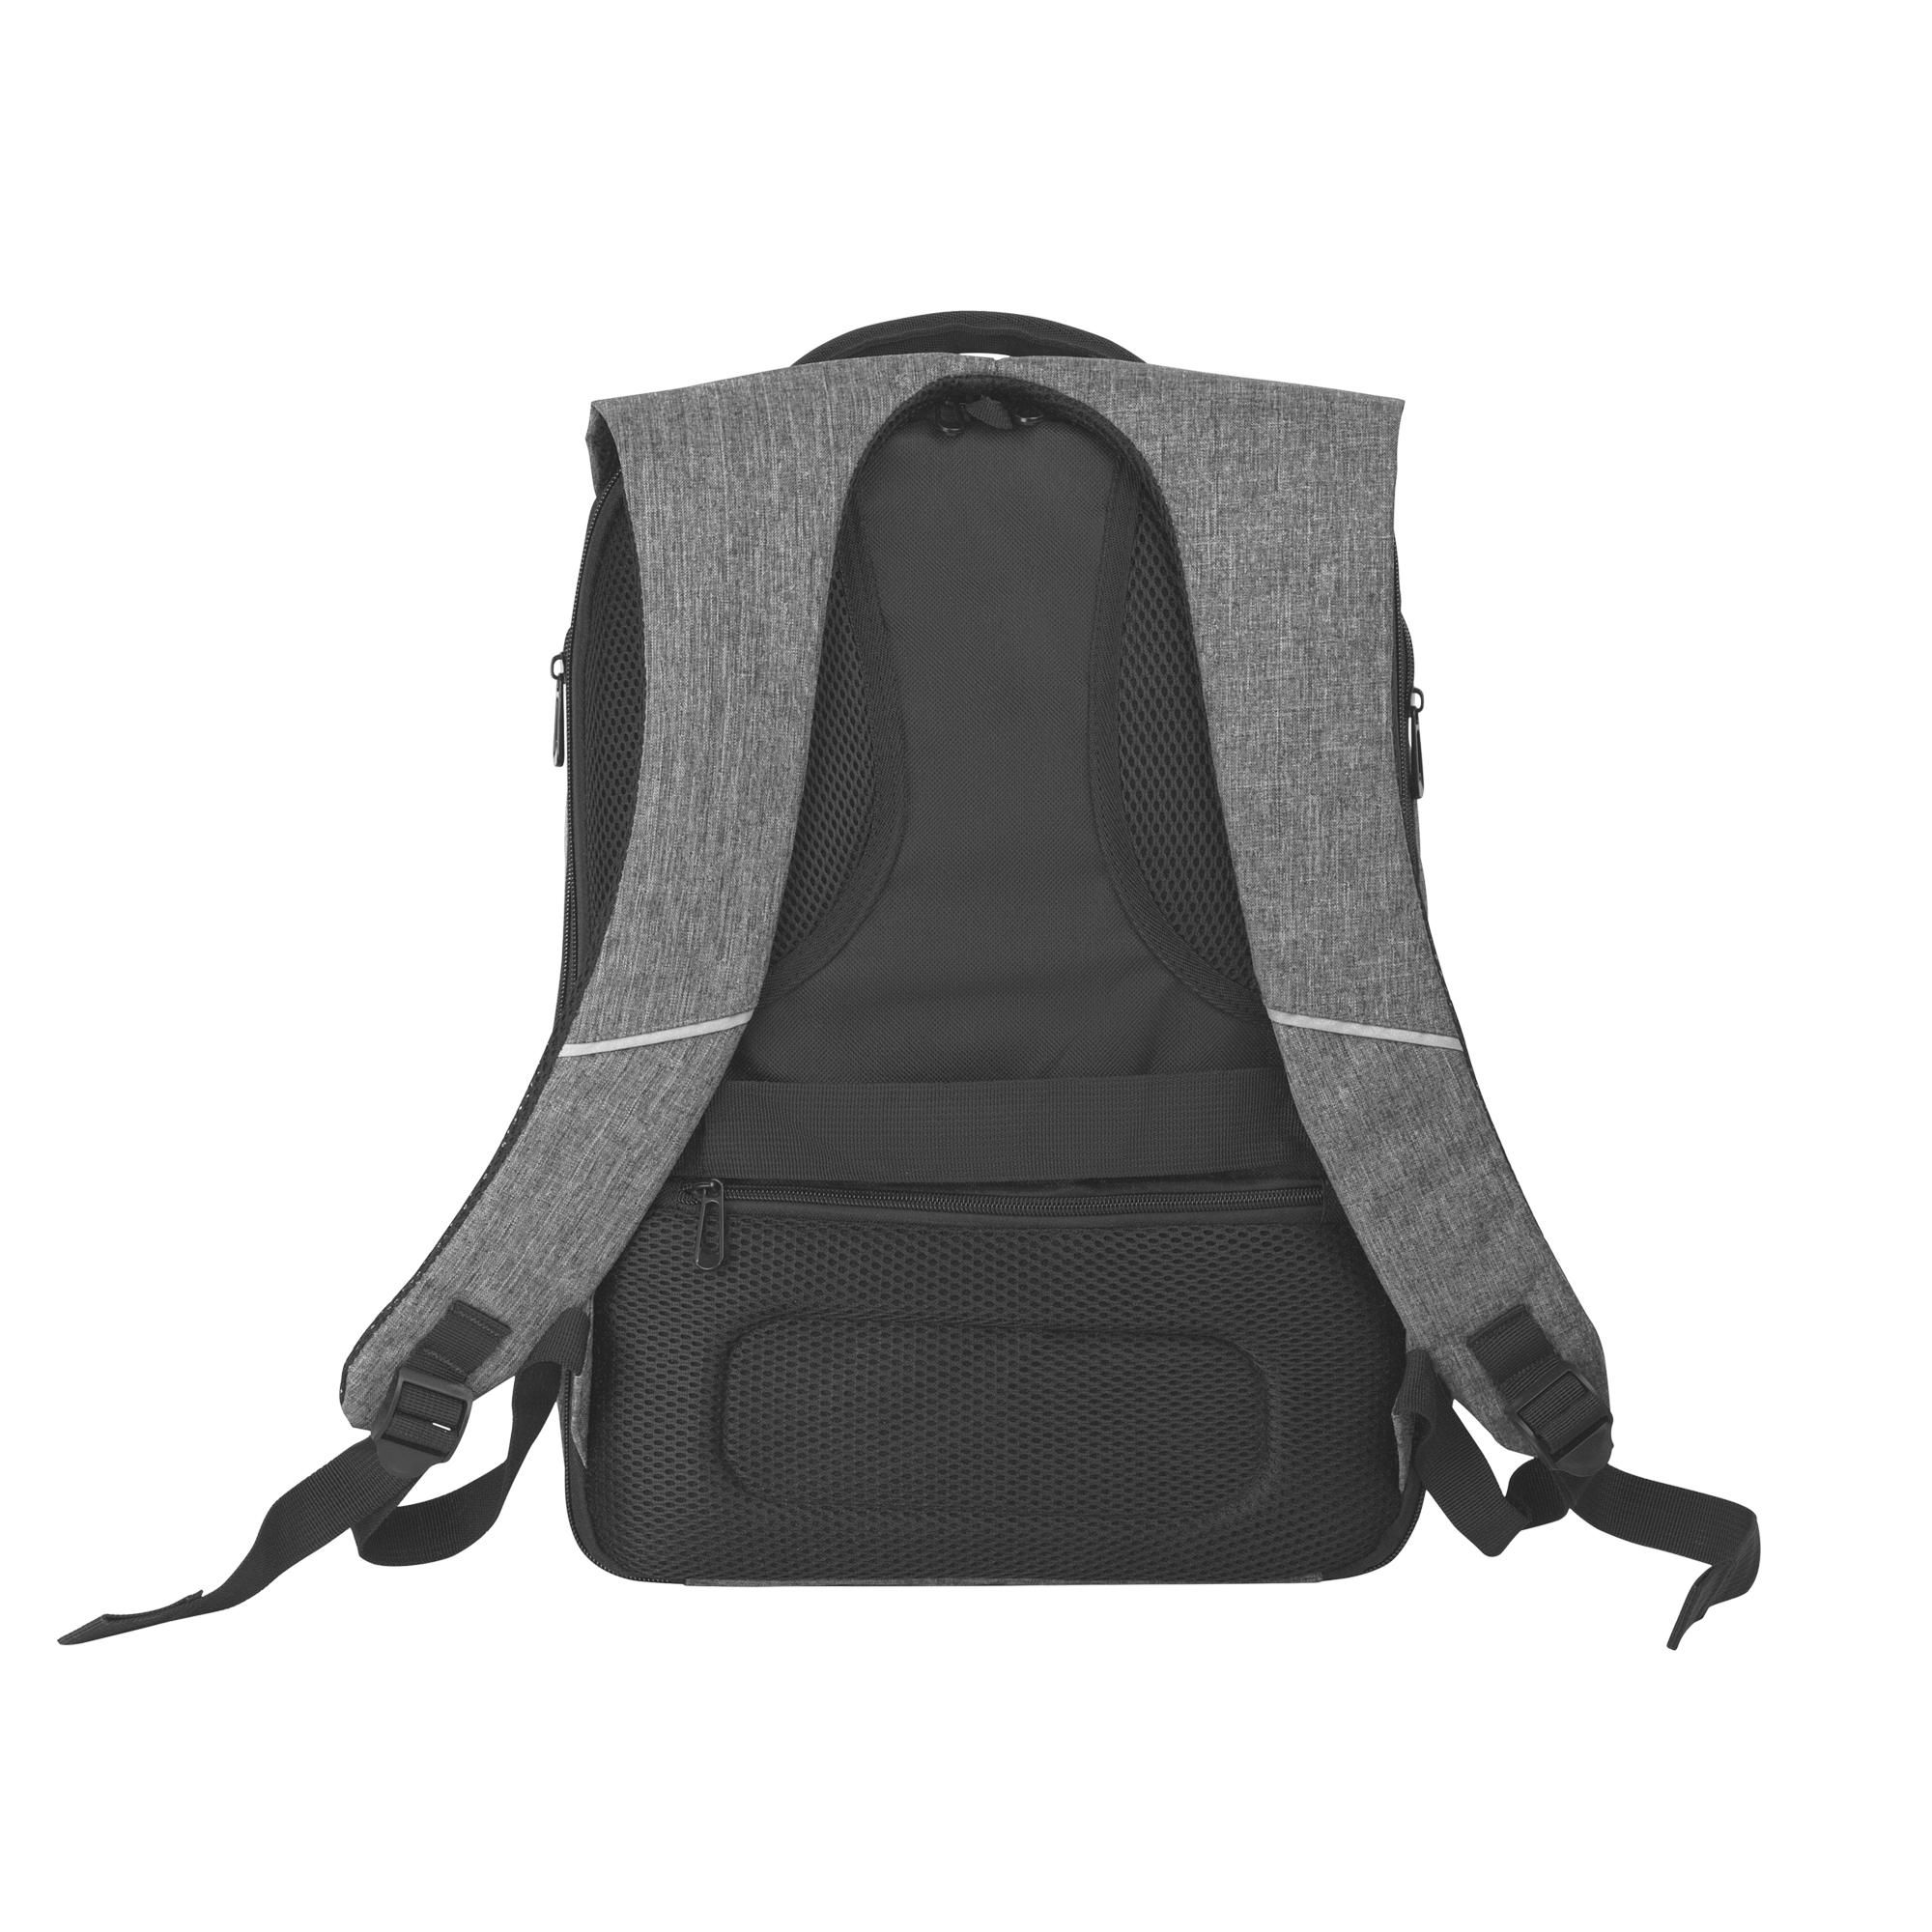 Рюкзак "Holiday" с USB разъемом и защитой от кражи, цвет серый с черным, фото 2